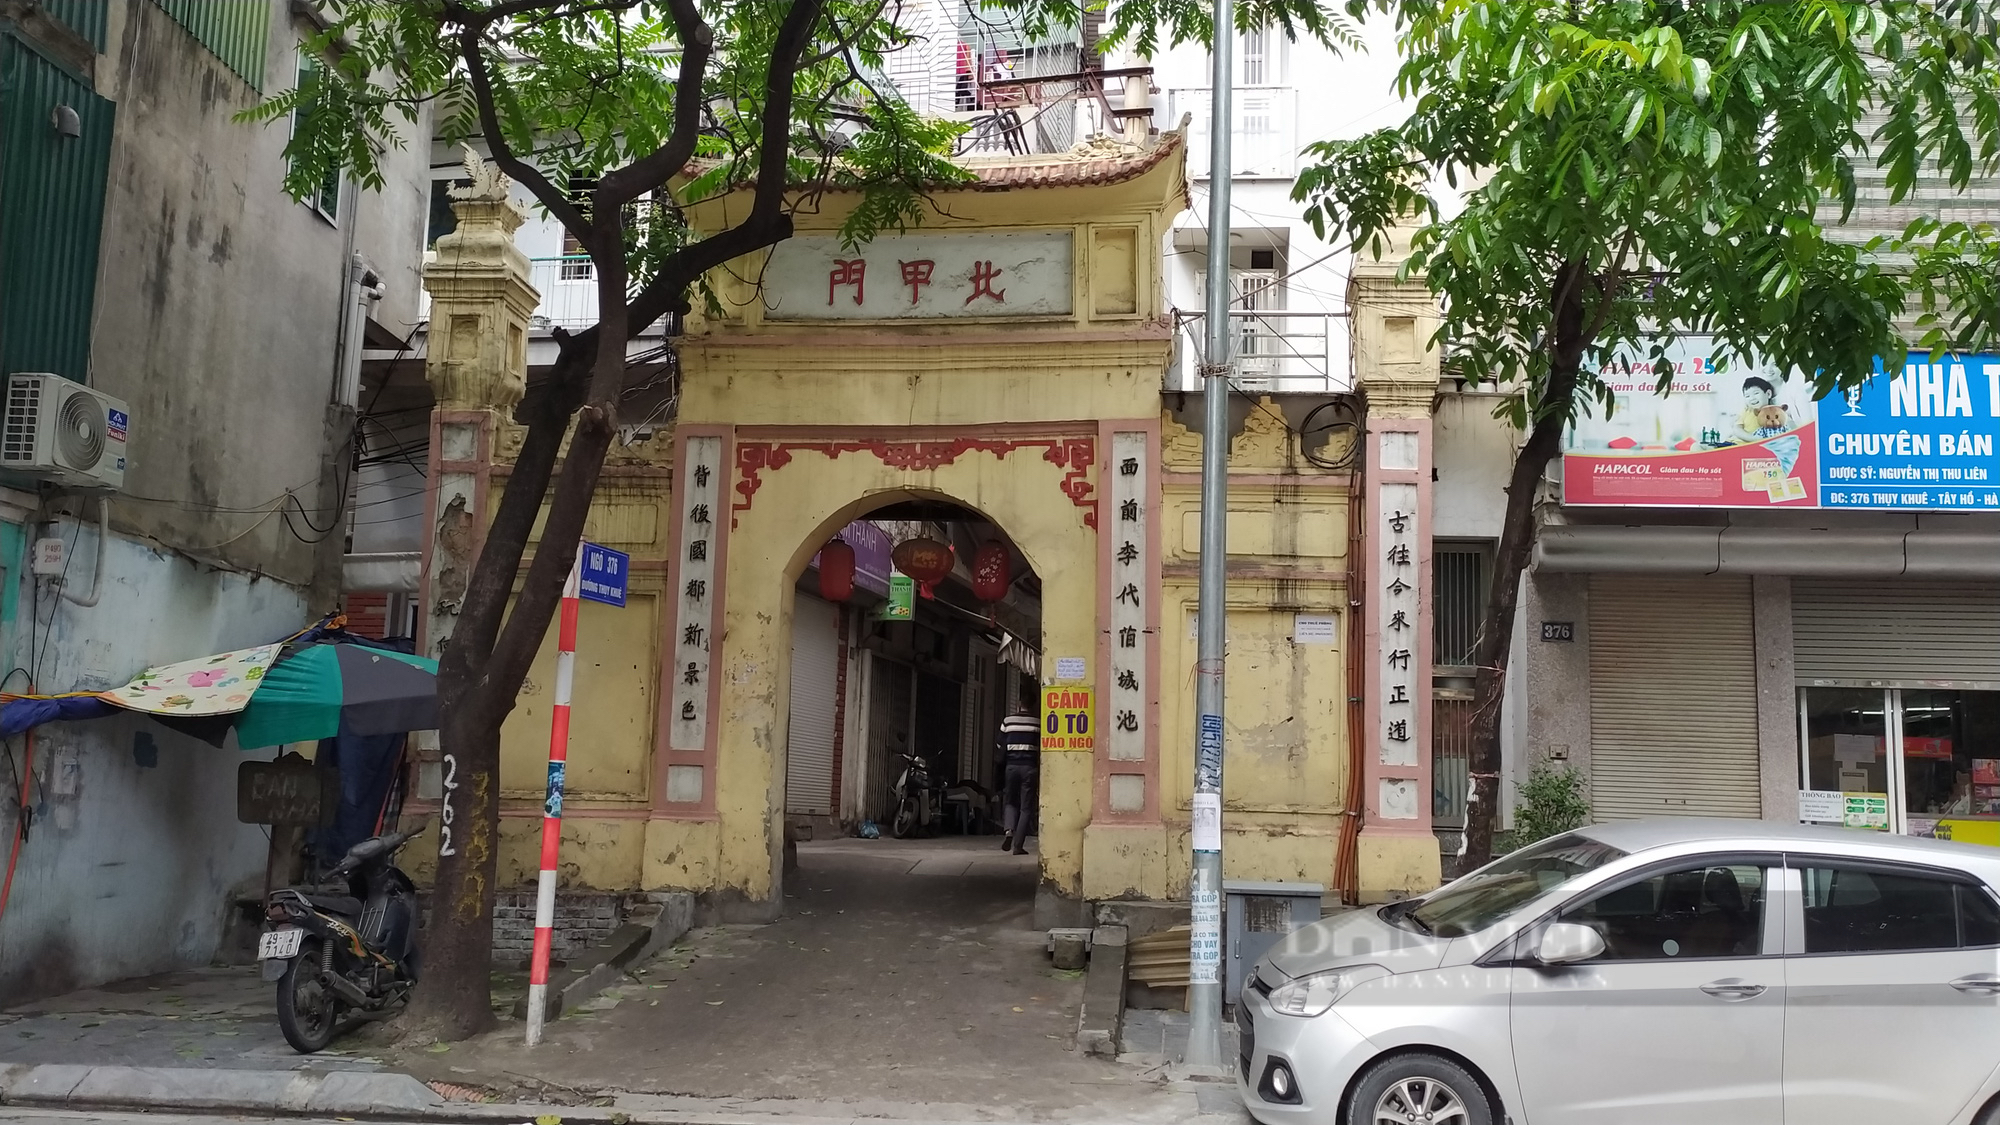 Chuyện về con phố có cổng làng cổ được ví là “đẹp nhất kinh kỳ” ở Hà Nội - Ảnh 6.